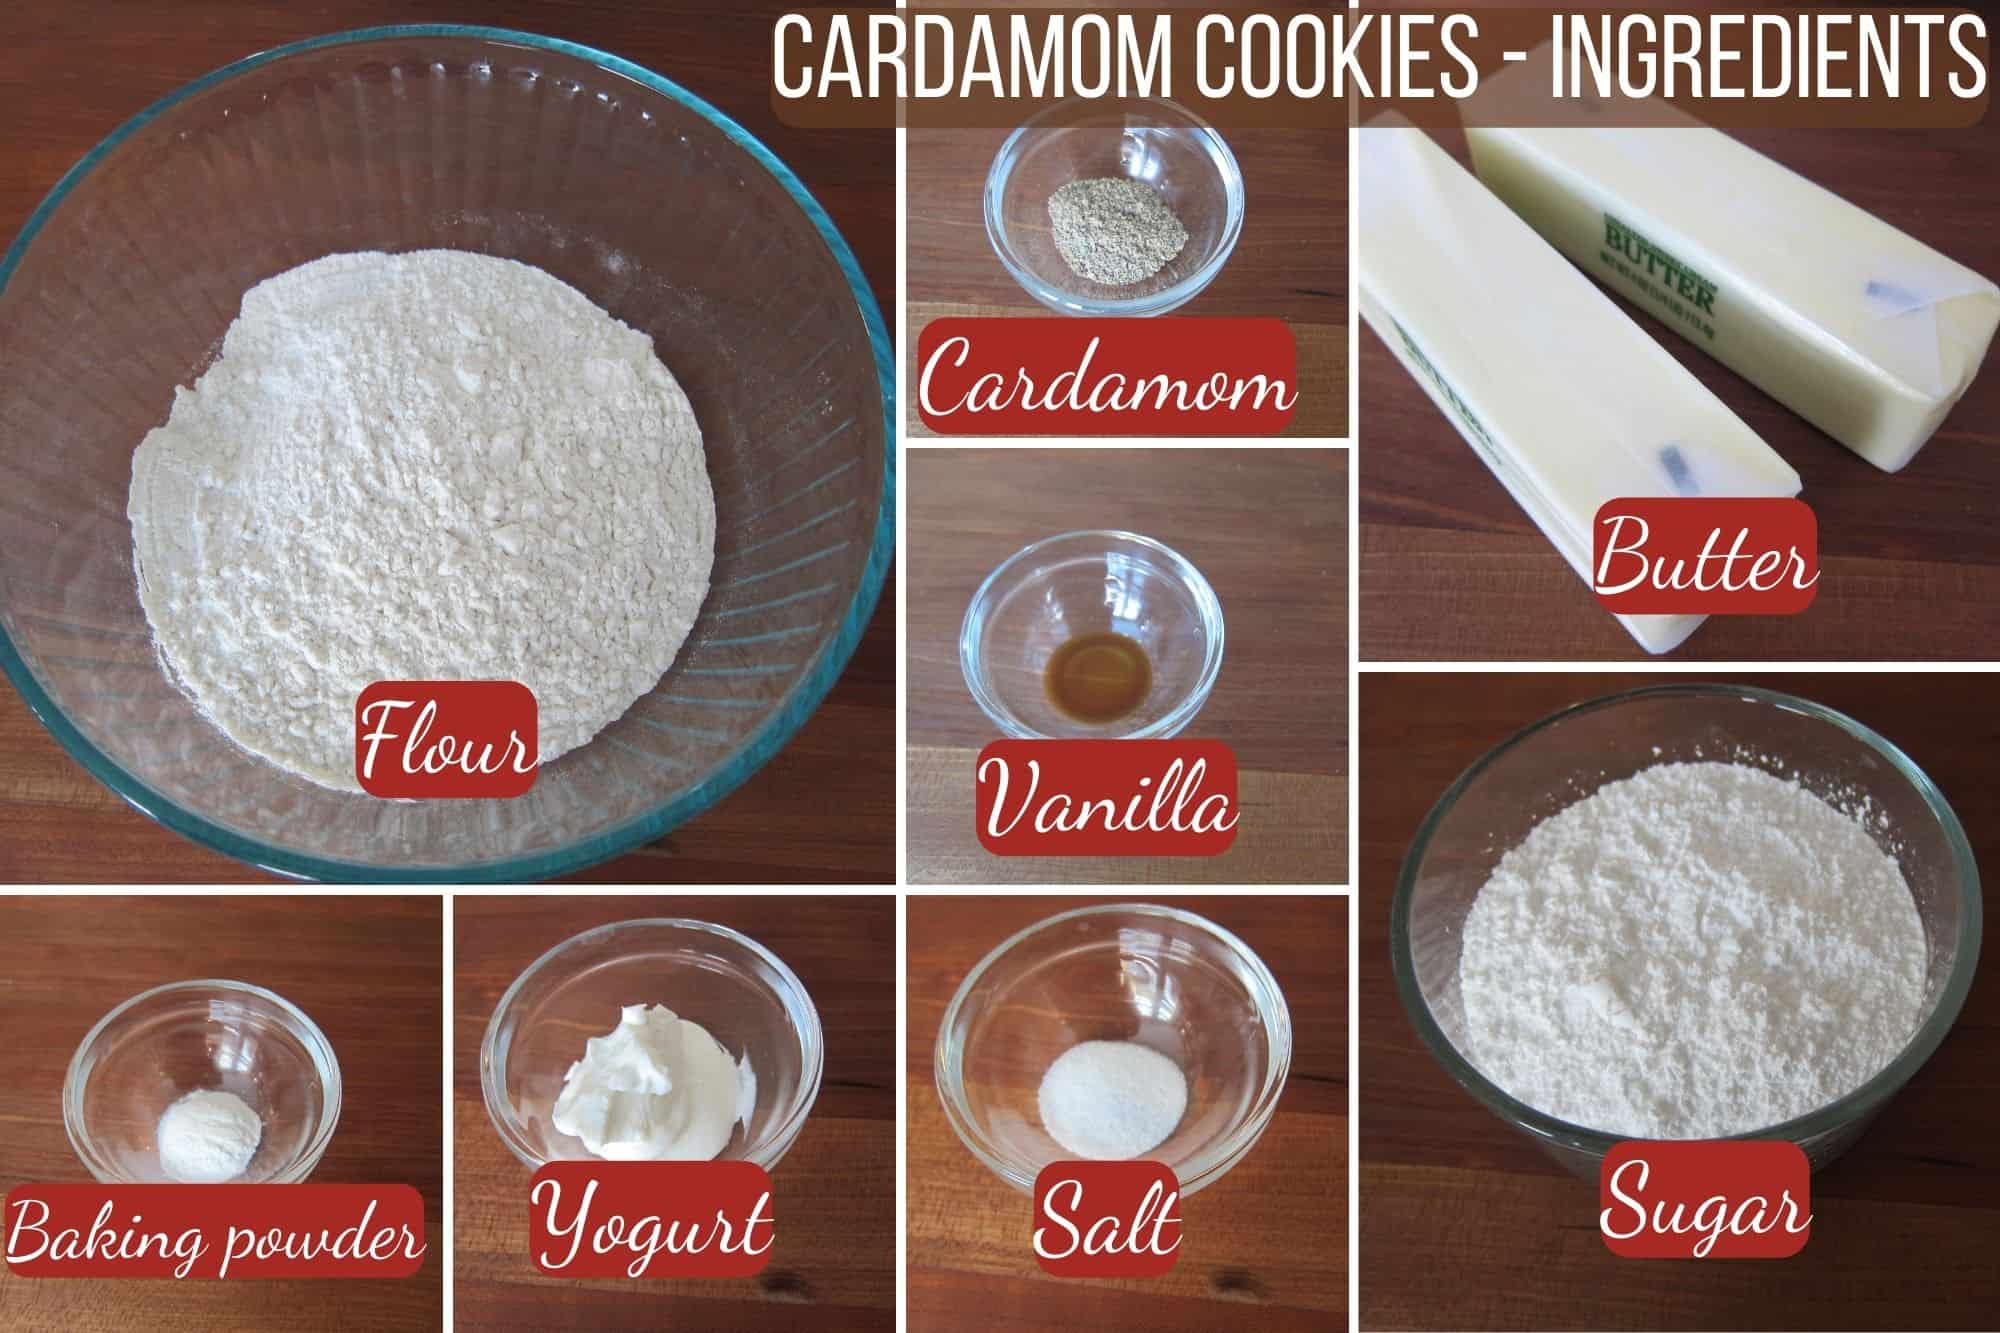 Ingredients required to make cardamom cookies - flour, cardamom, butter, vanilla, baking powder, yogurt, salt, sugar